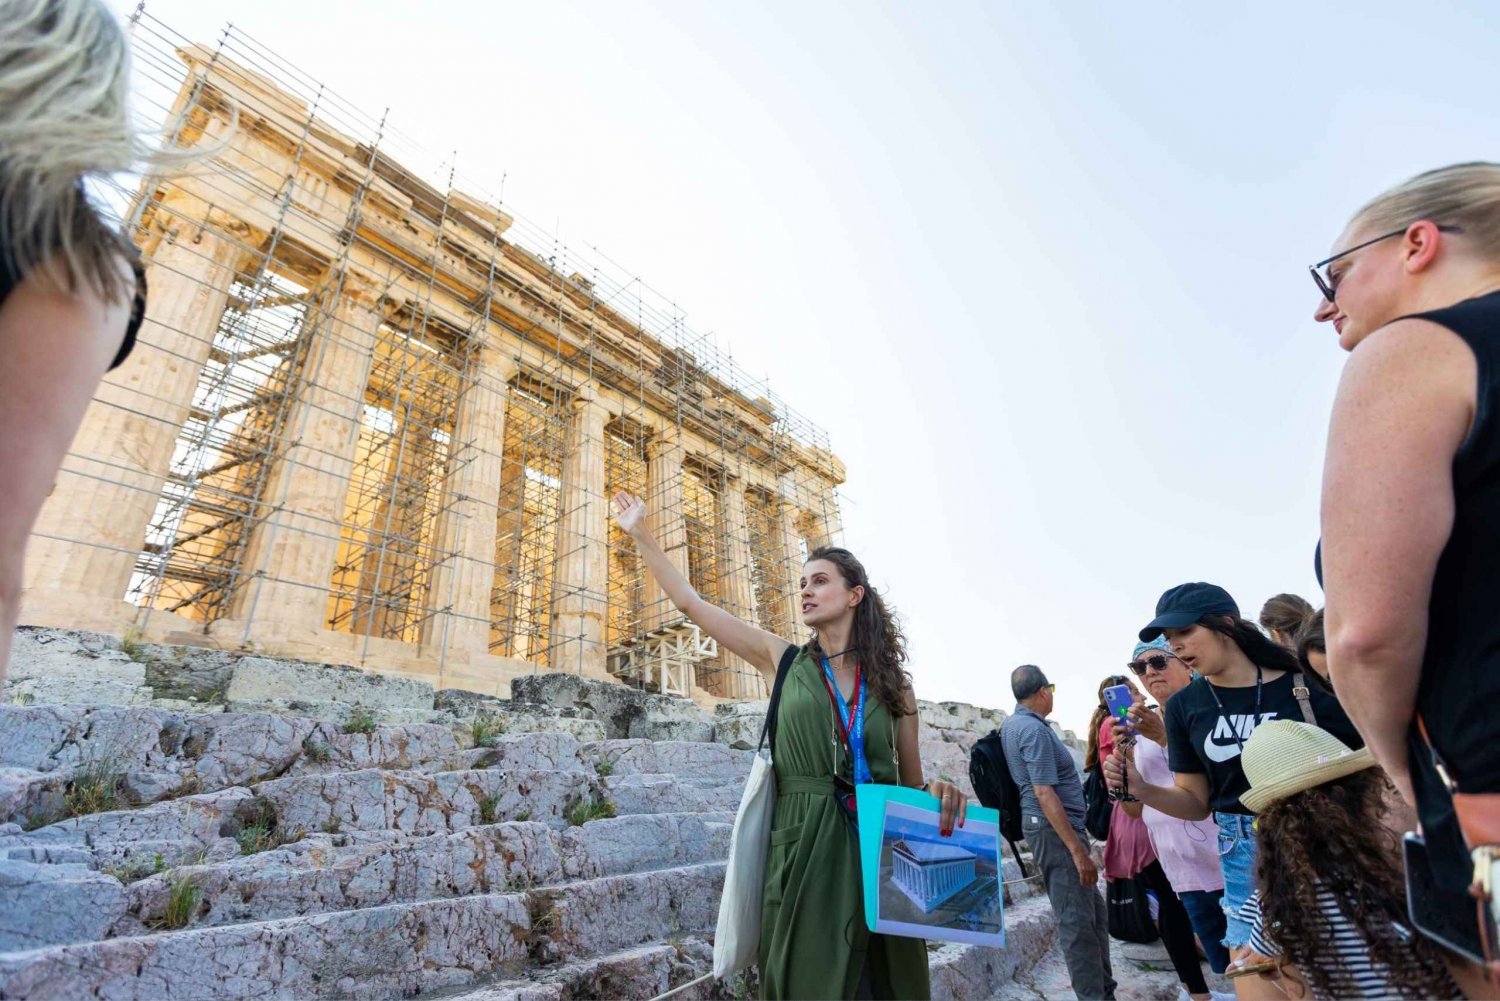 Aten: Tidig morgon guidad tur till Akropolis och museet